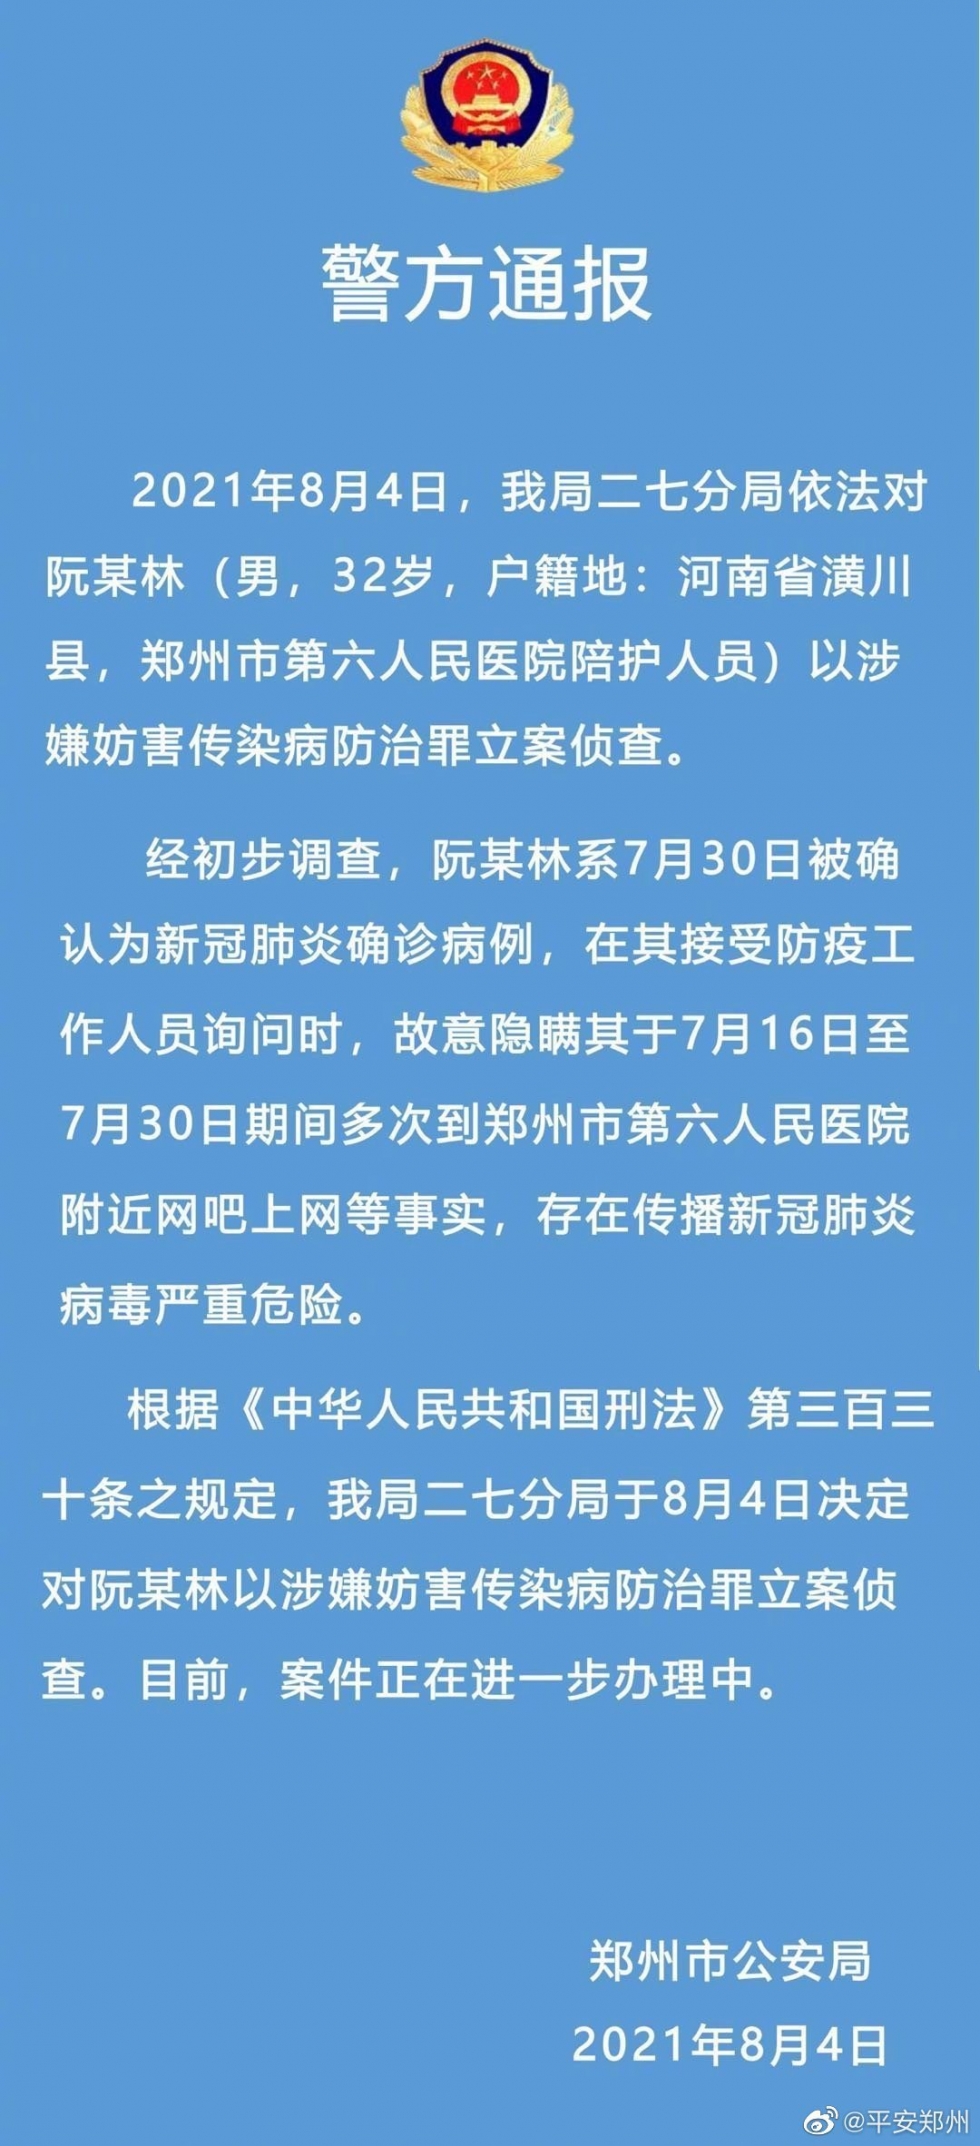 郑州市一确诊病例故意隐瞒行程被立案侦查